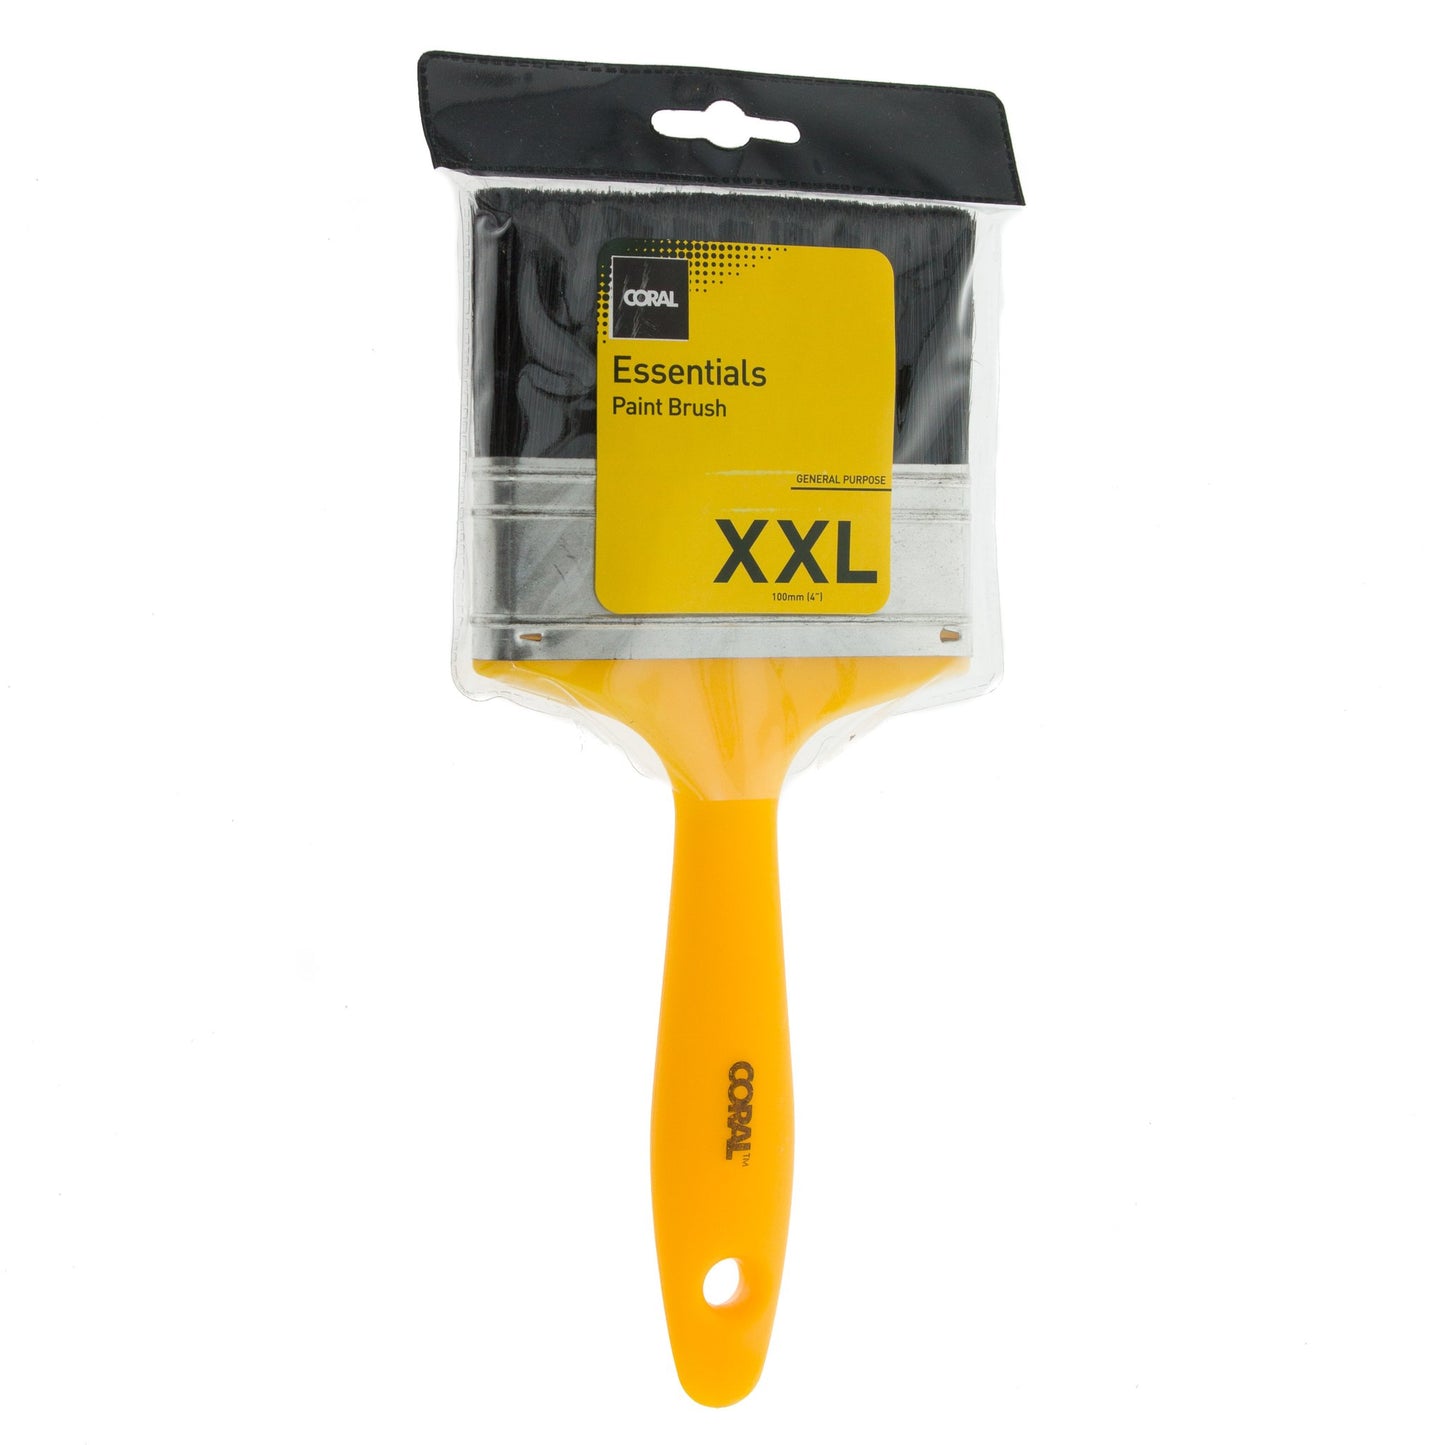 Essentials Paint Brush XXL 4in